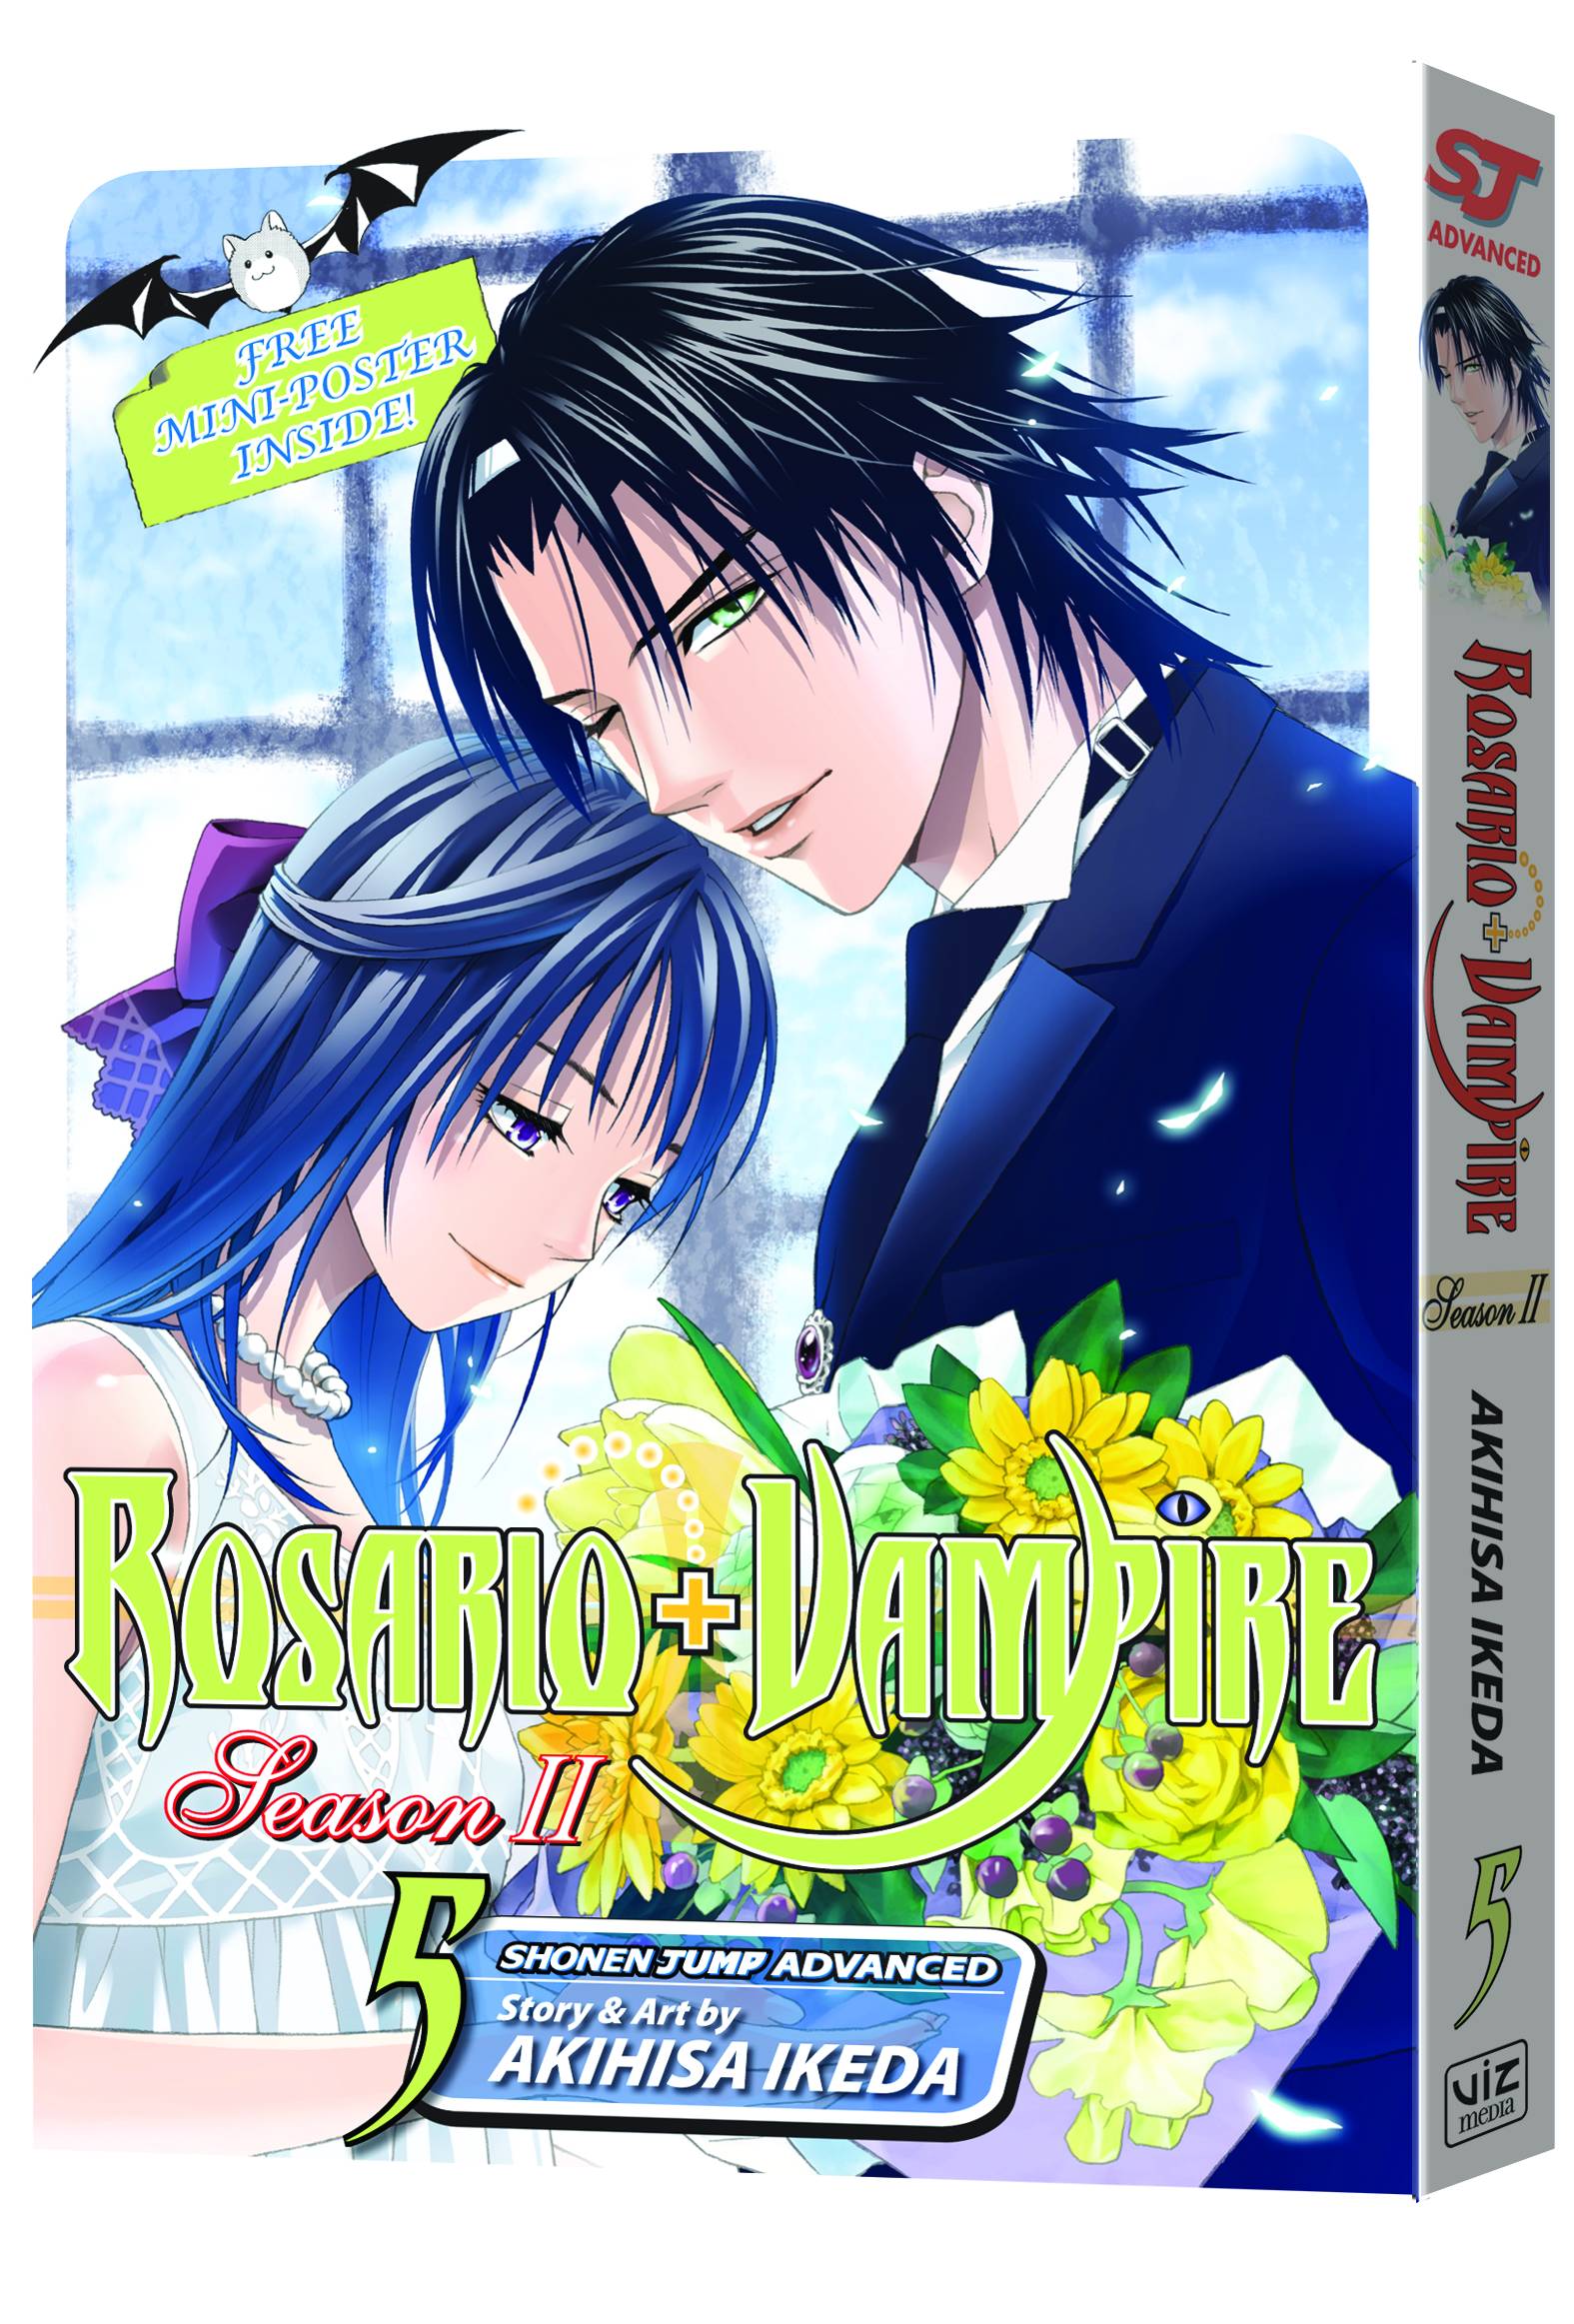 Rosario Vampire Season II Manga Volume 5